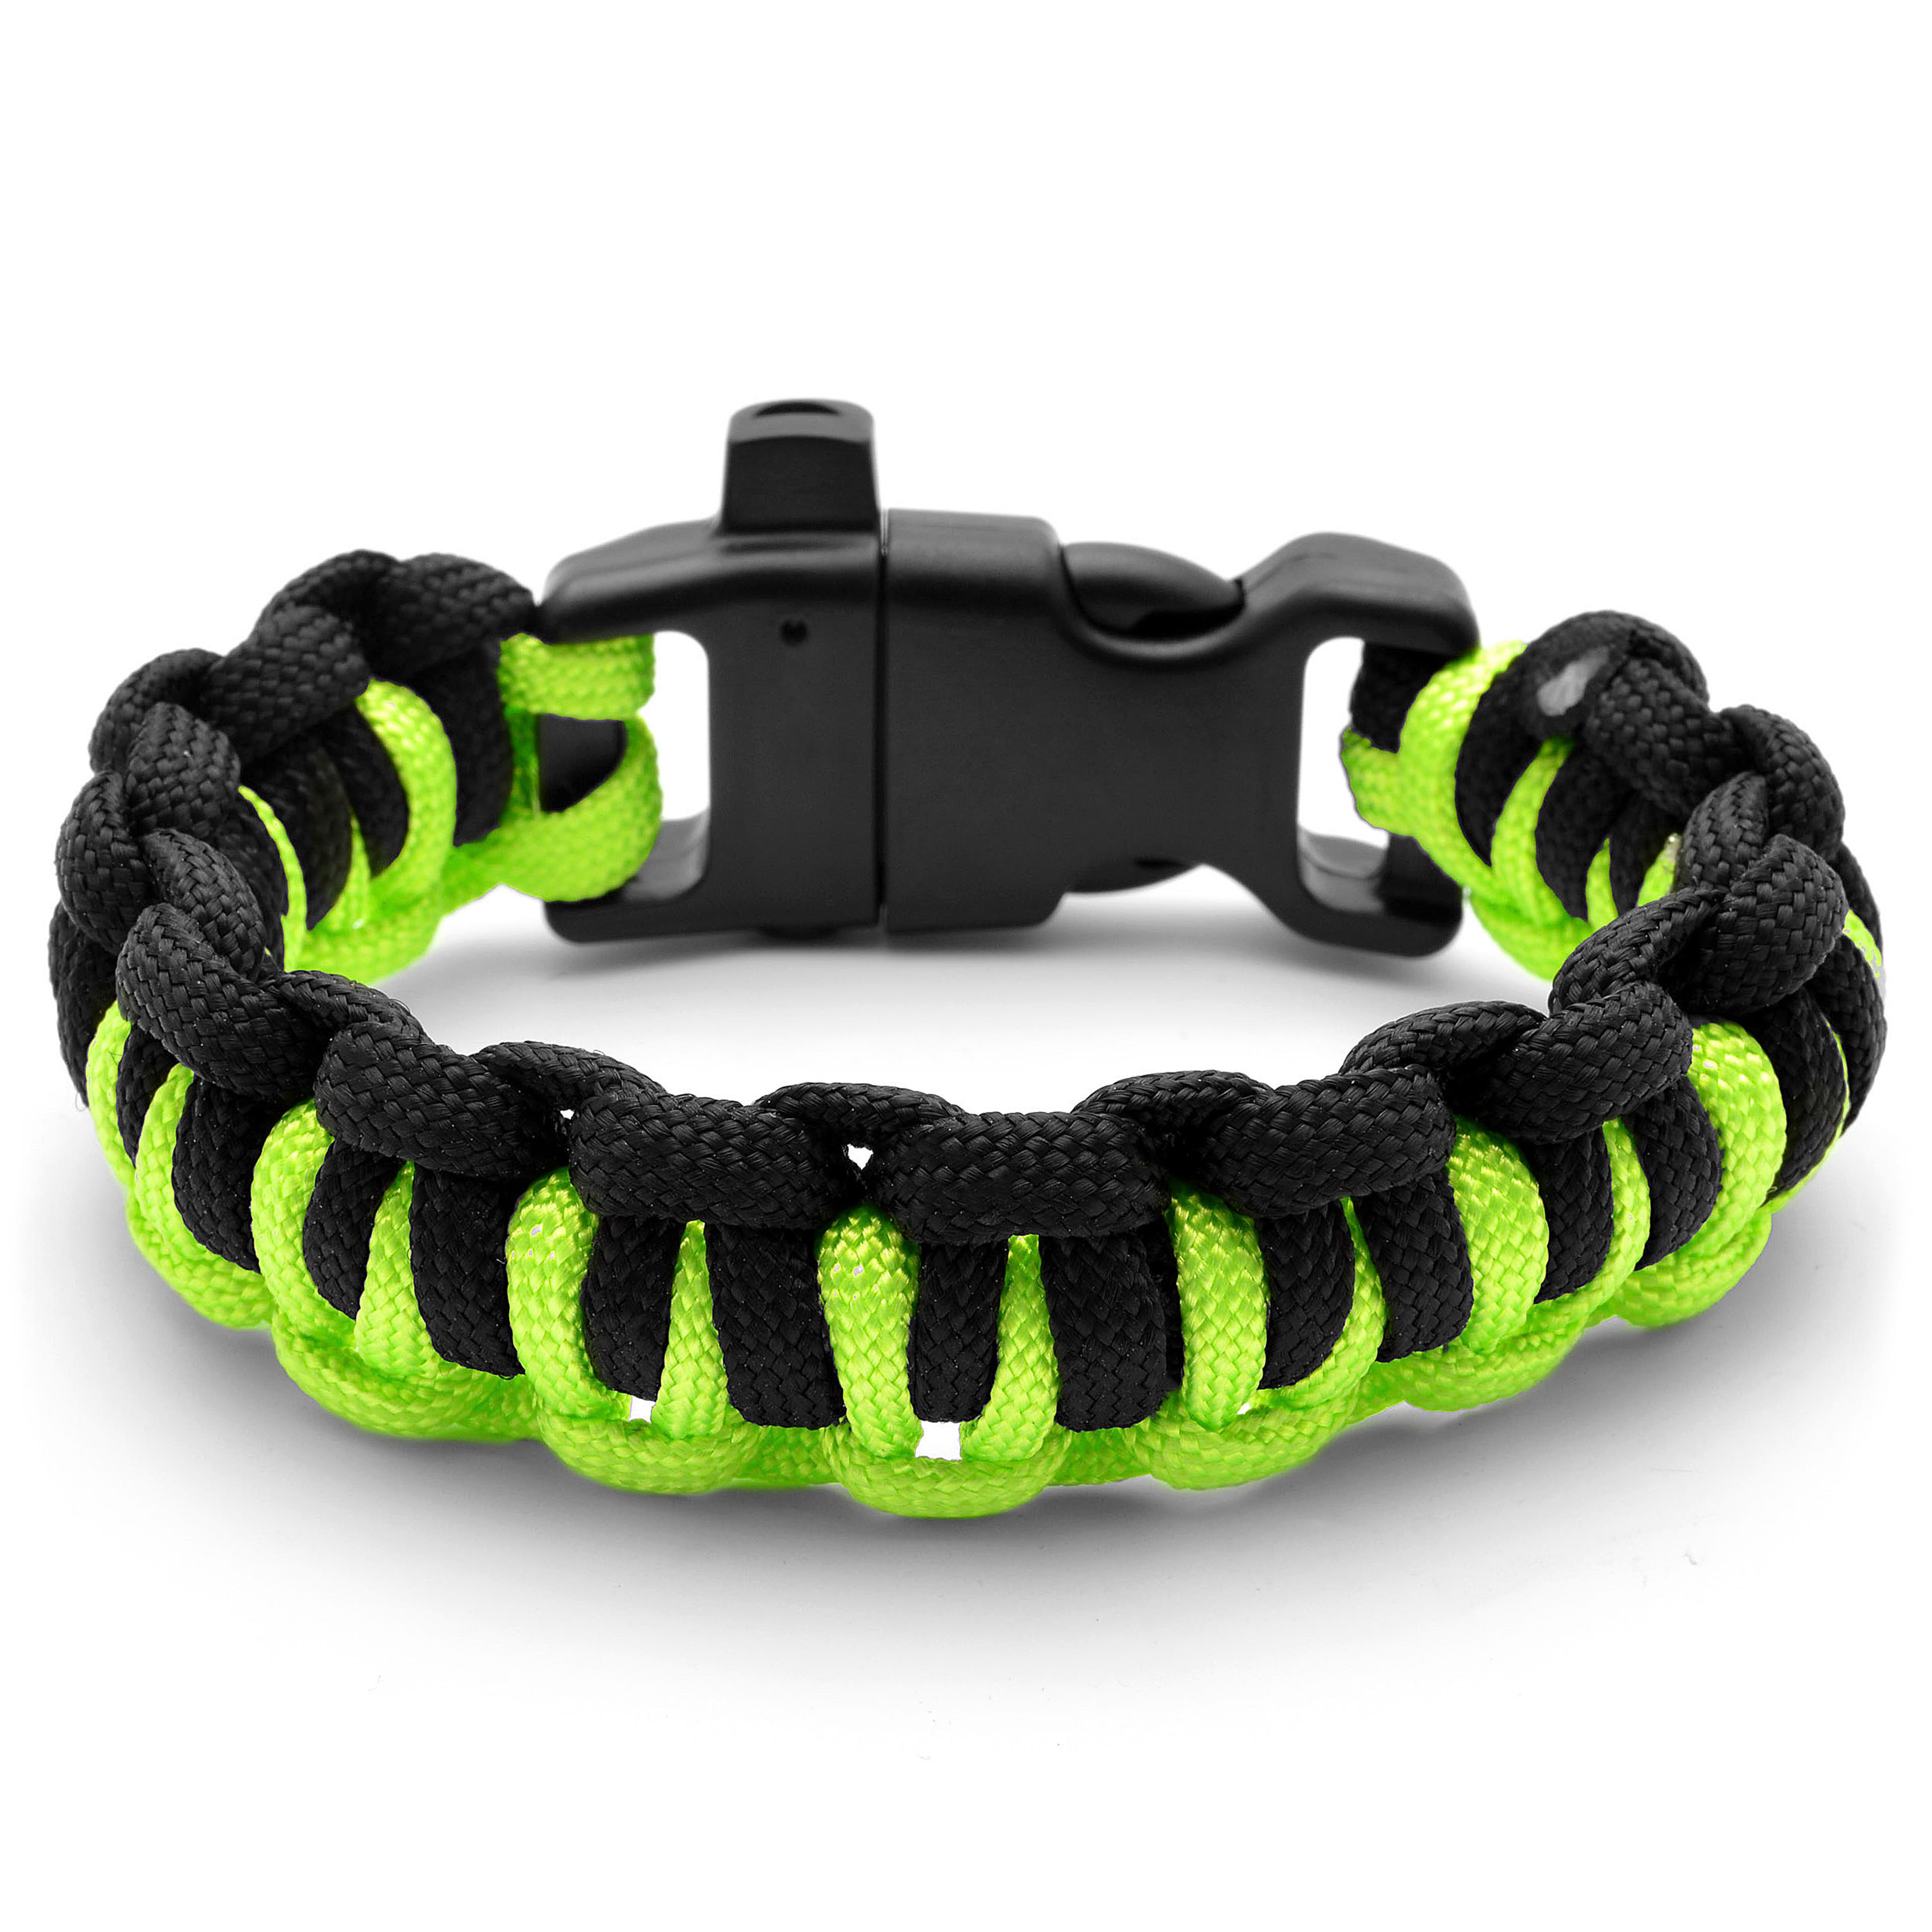 Neon Paracord Bracelet